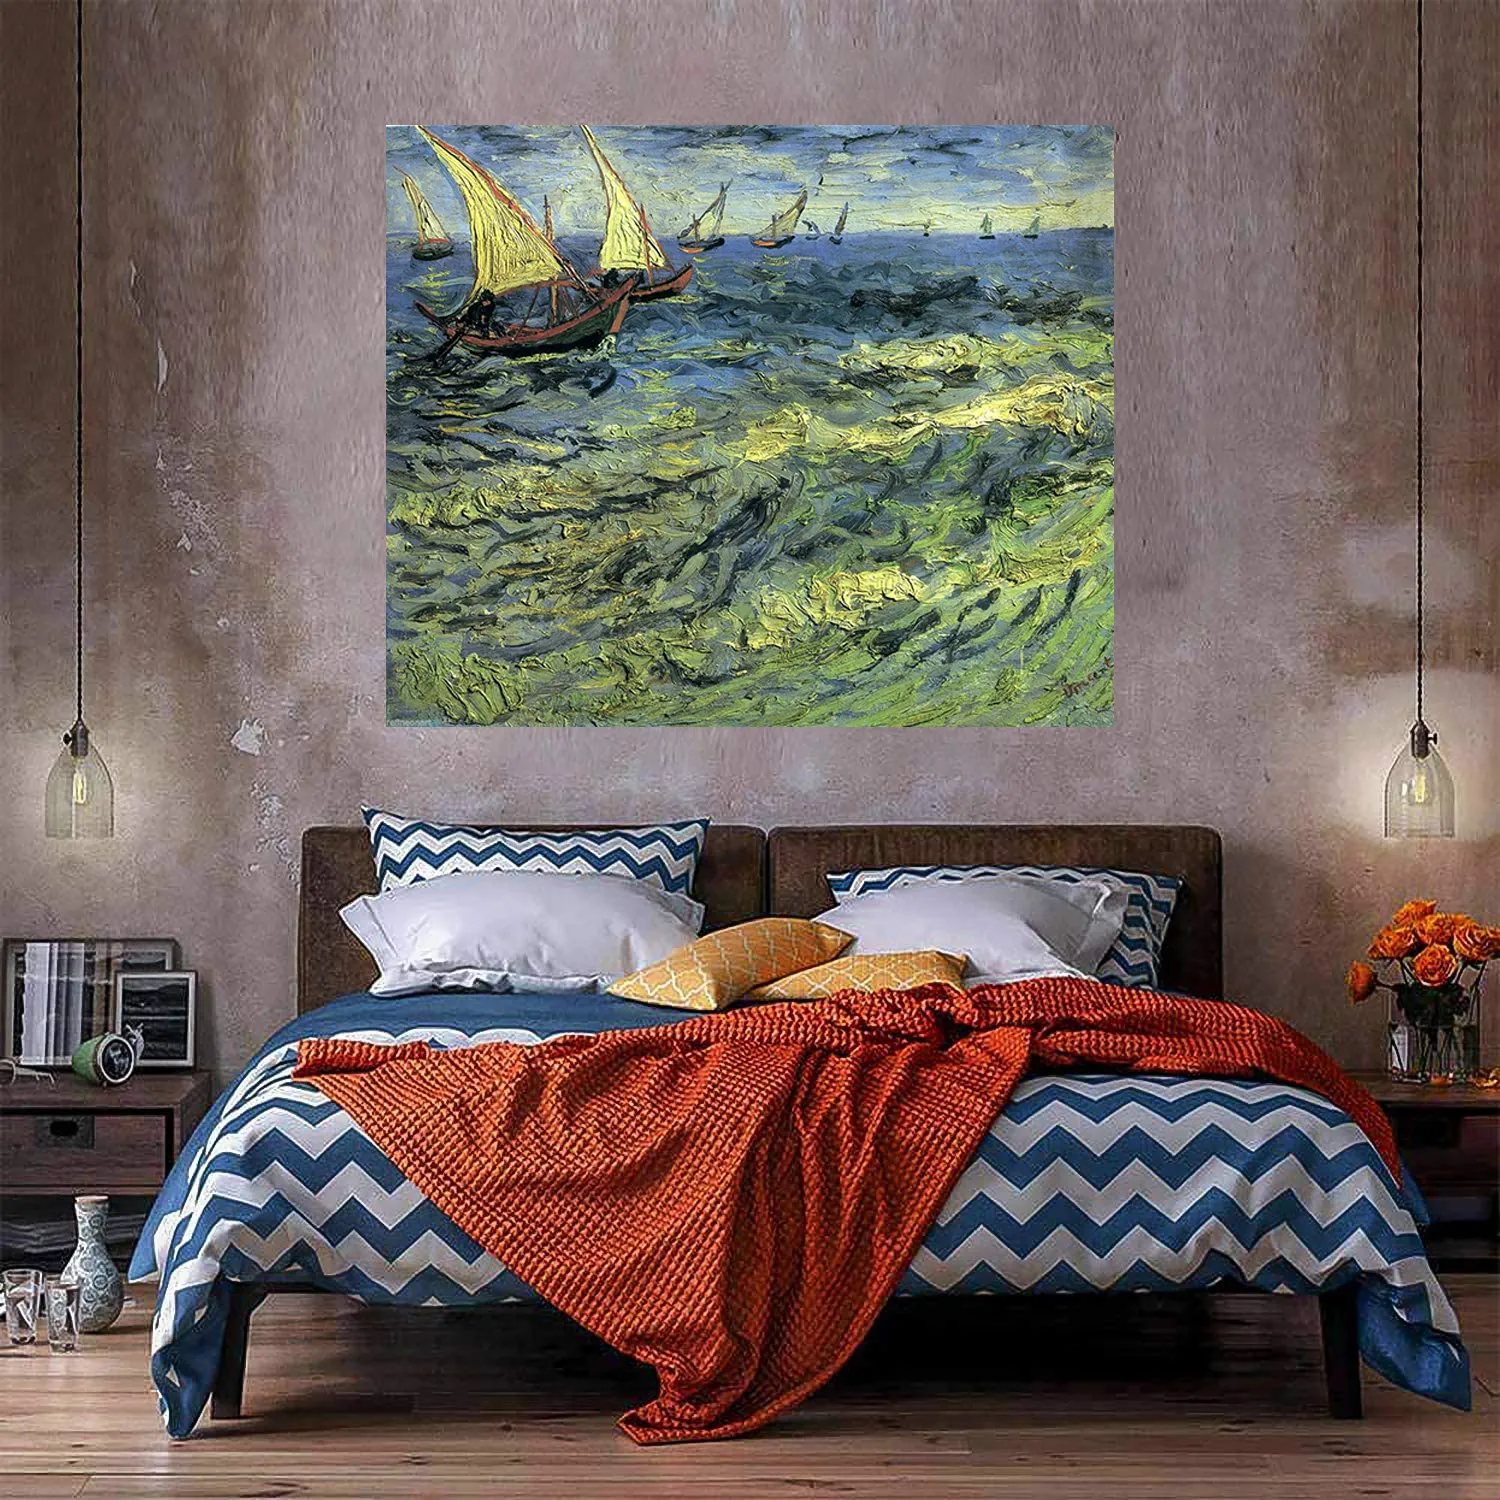 Fischerboote am Meer Home Decor Riesiges Ölgemälde auf Leinwandhandwerk / HD Print Wandkunst-Anpassungsanpassung ist akzeptabel 21051302